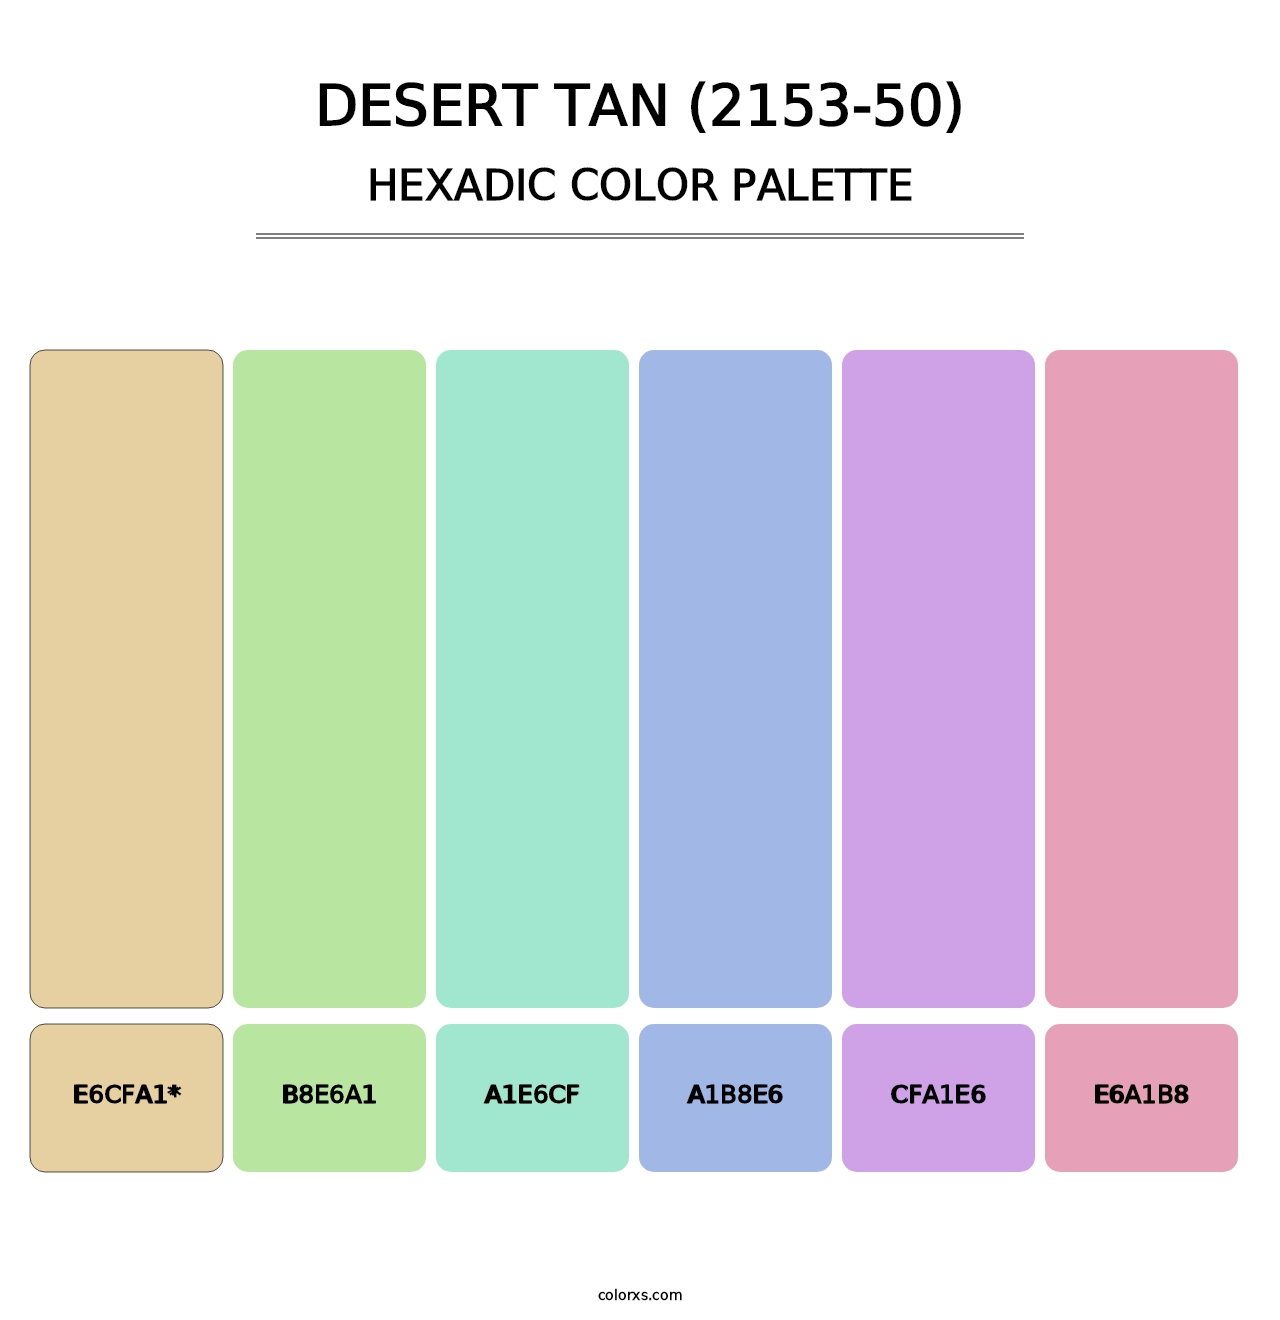 Desert Tan (2153-50) - Hexadic Color Palette